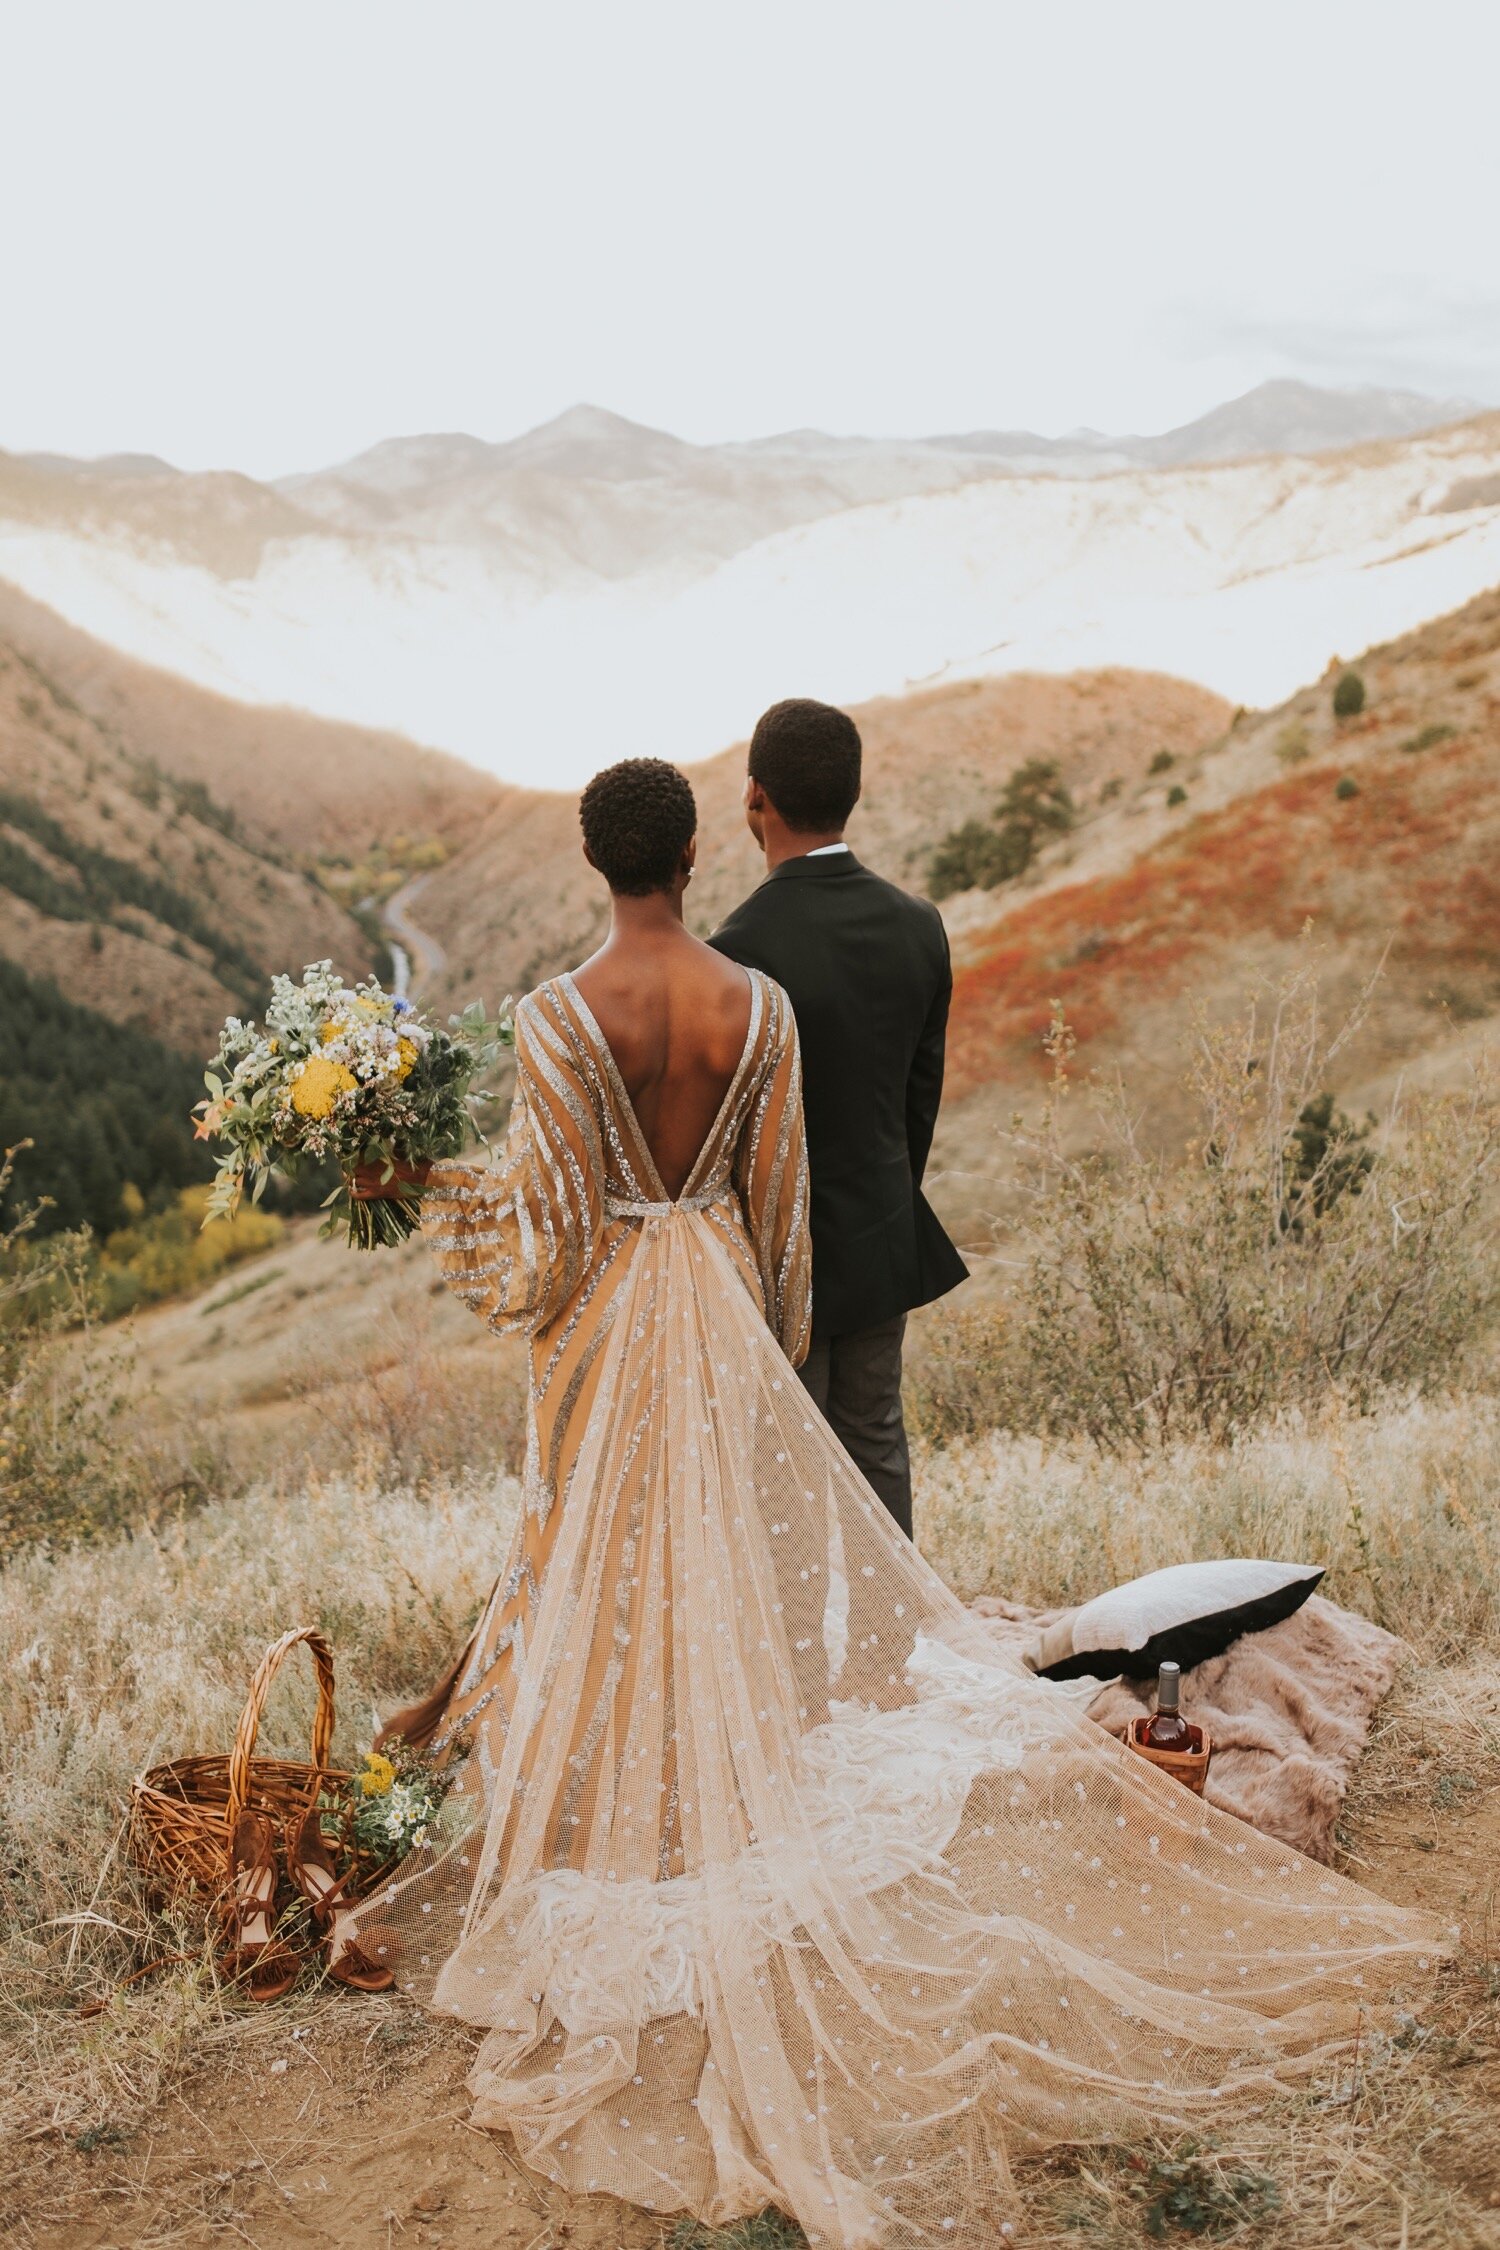 Lookout Mountain, Lookout Mountain Colorado, Colorado Elopement, Colorado elopement photographer, colorado wedding photographer